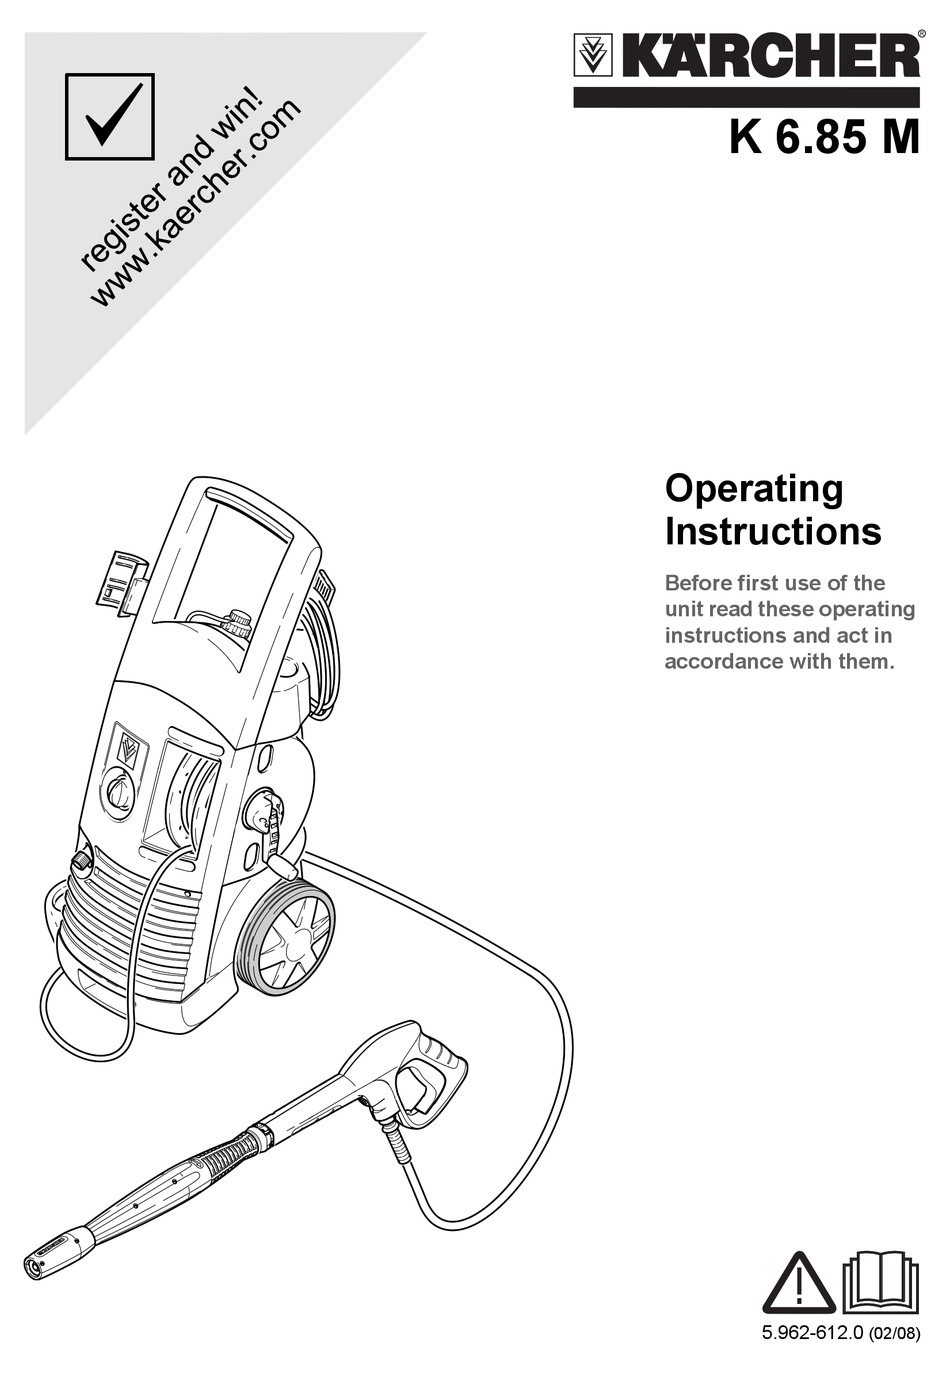 Voorrecht Geroosterd Bengelen Troubleshooting - Kärcher K 6.85 M Operating Instructions Manual [Page 9] |  ManualsLib